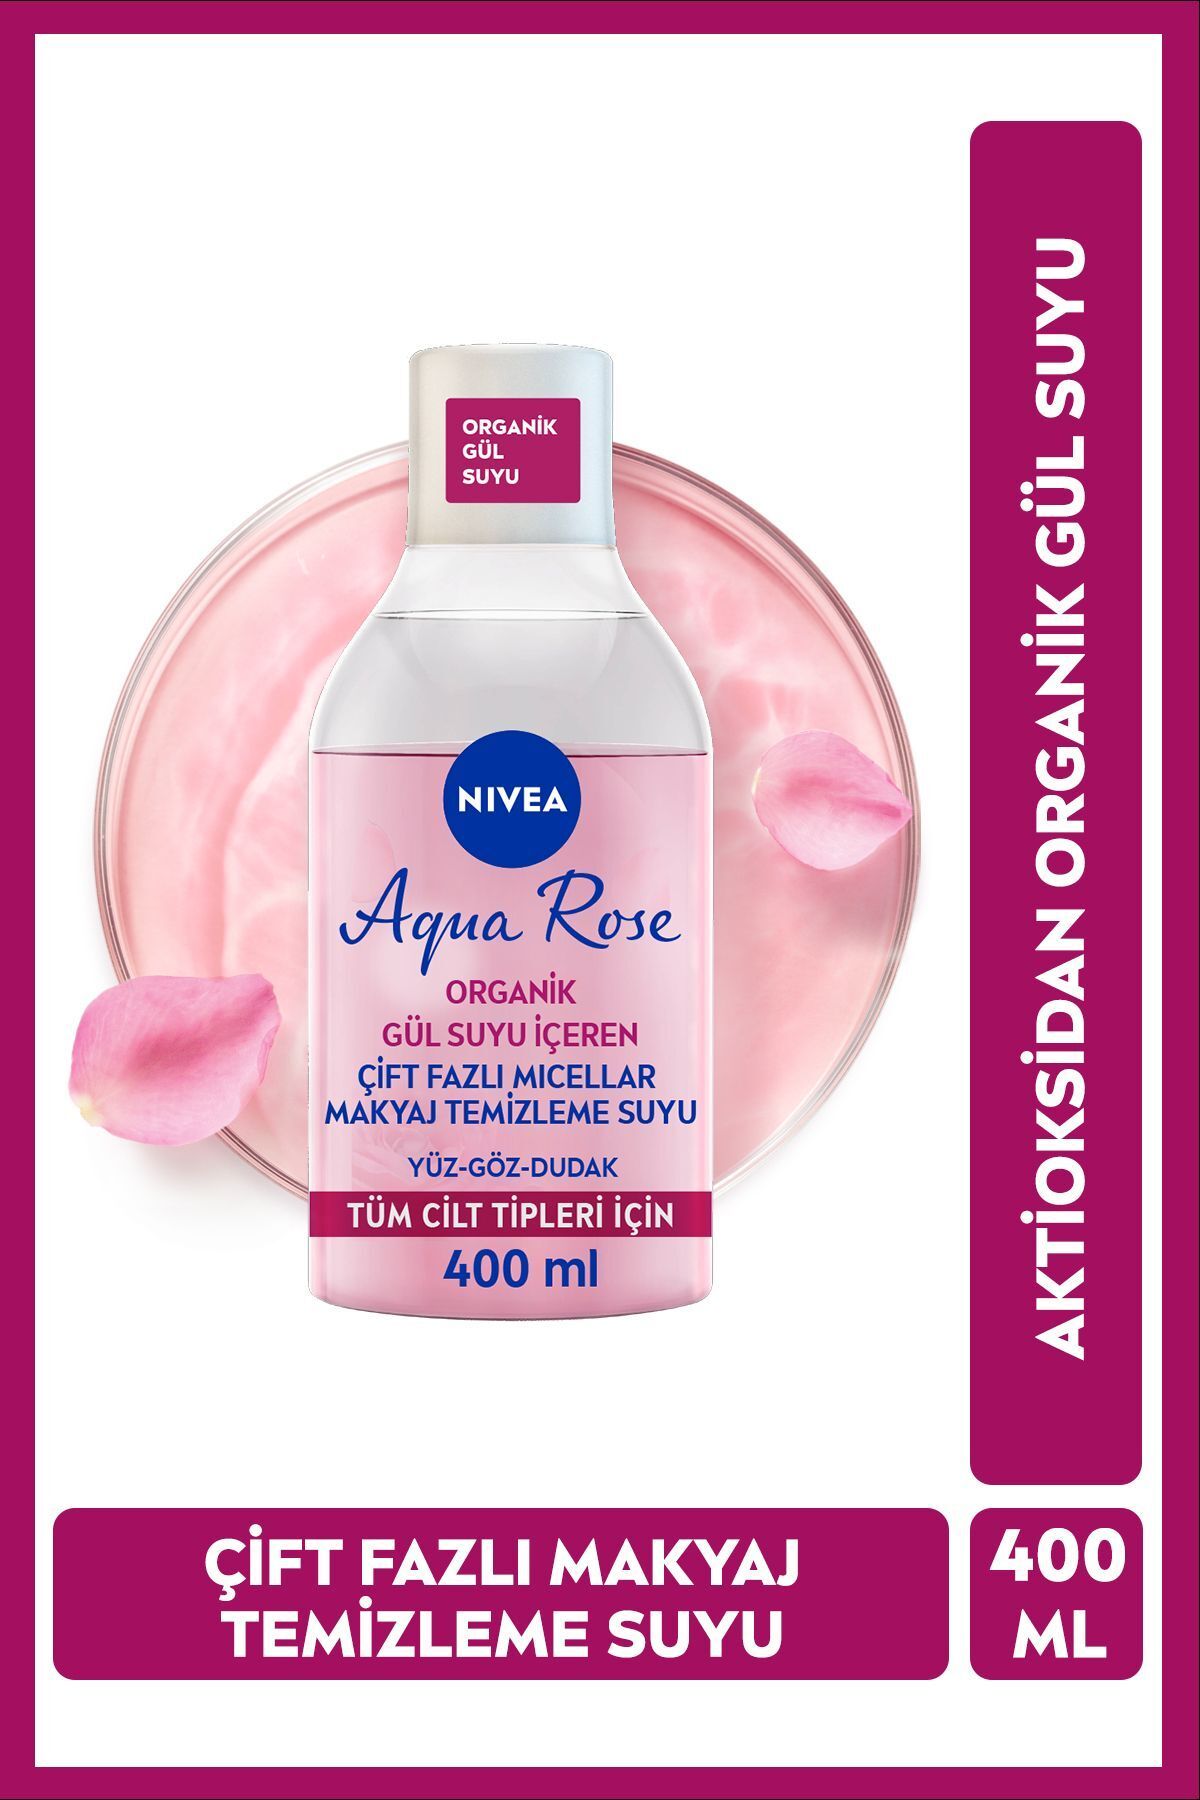 NIVEA Aqua Rose Micellar Gül Suyu Çift Fazlı Makyaj Temizleme Suyu 400ml, Yüz Göz Ve Dudak, Nemlendirici